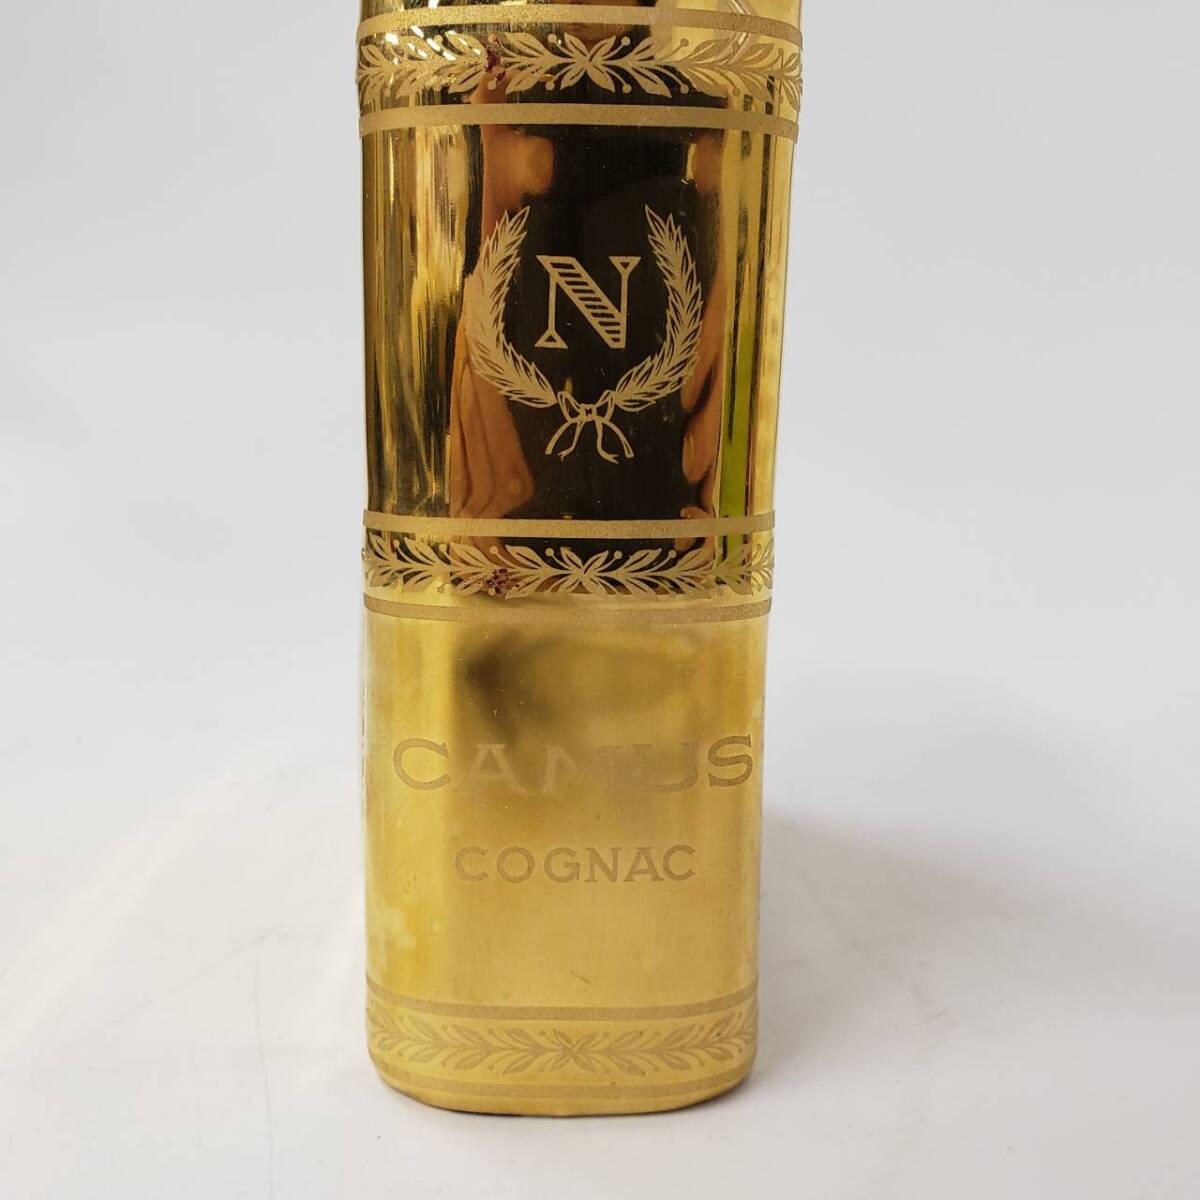 M39222(052)-525/YS3000 酒 CAMUS NAPOLEON COGNAC カミュ ナポレオン コニャック ブランデー ブック型 陶器ボトル 700mlの画像7